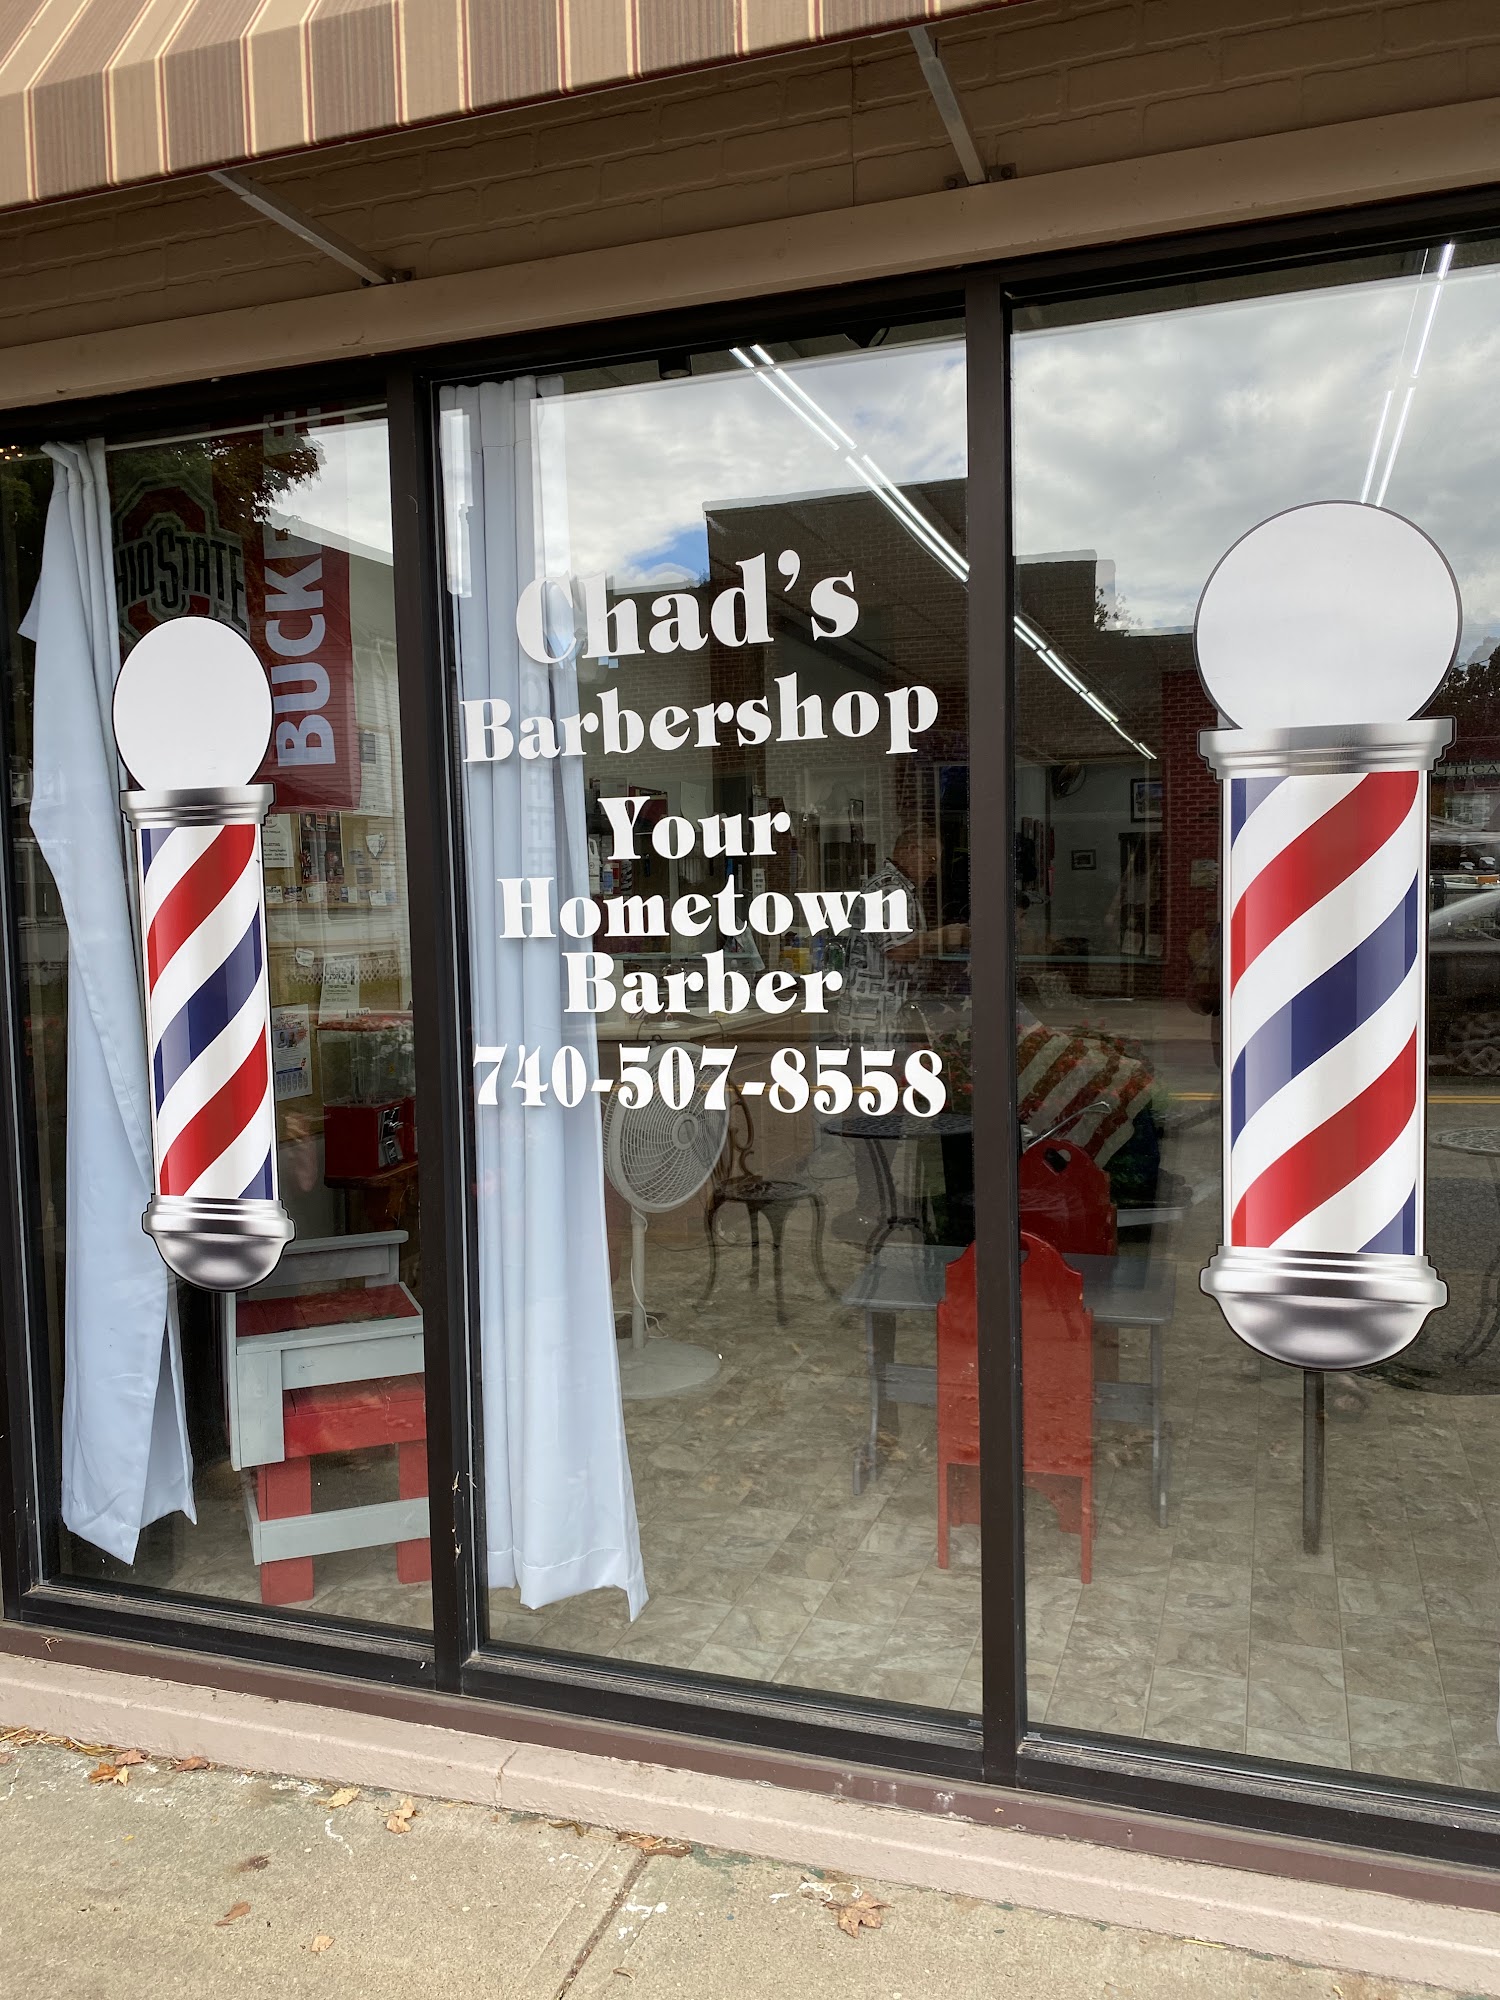 Chad's Barber Shop 65 S Main St, Utica Ohio 43080